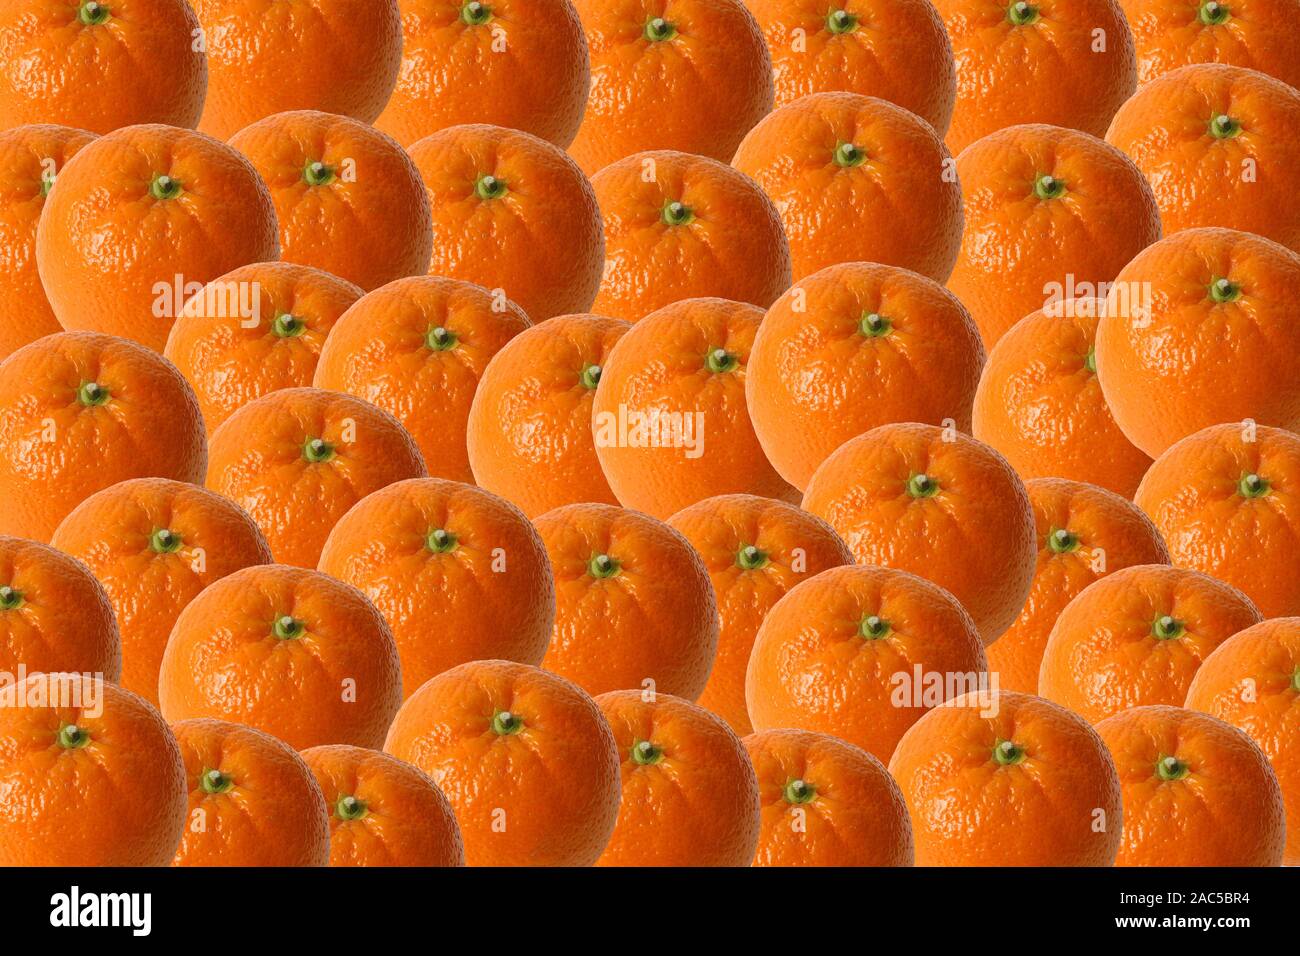 Orangen suis Marktstand Banque D'Images